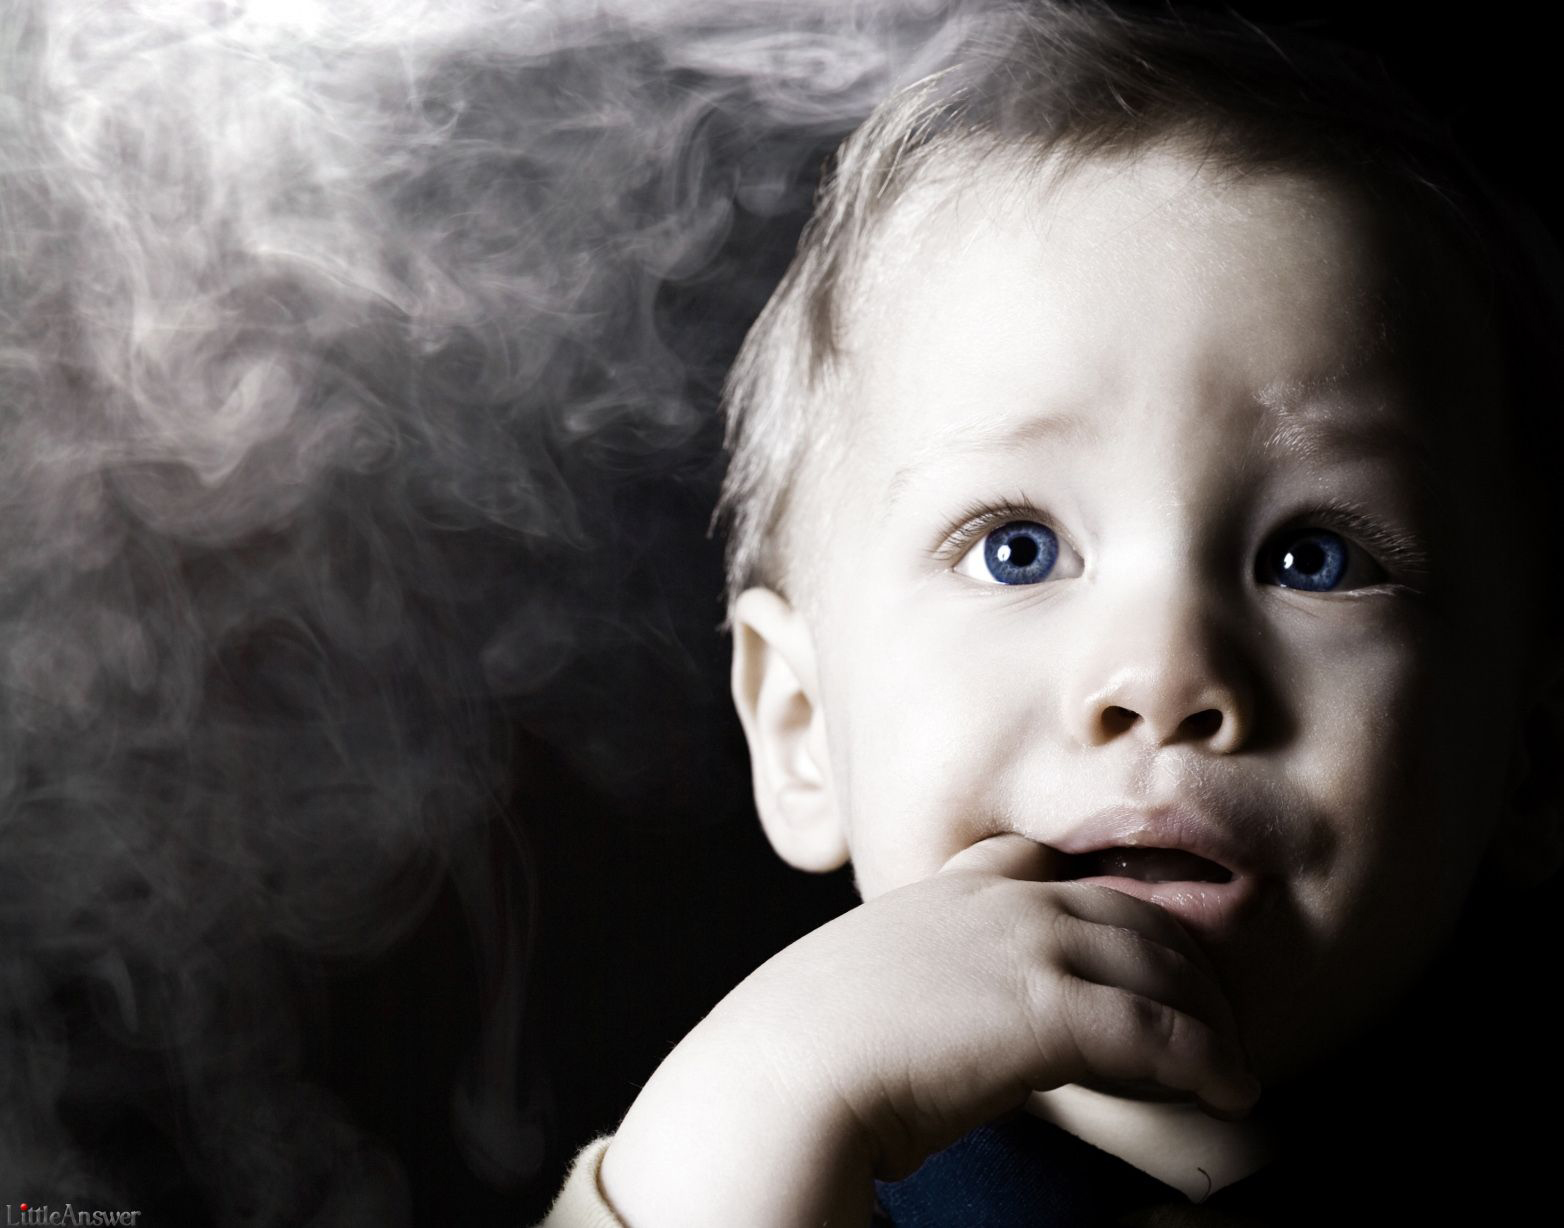 بیماریهای تنفسی در کودکان با دود دست دوم سیگار